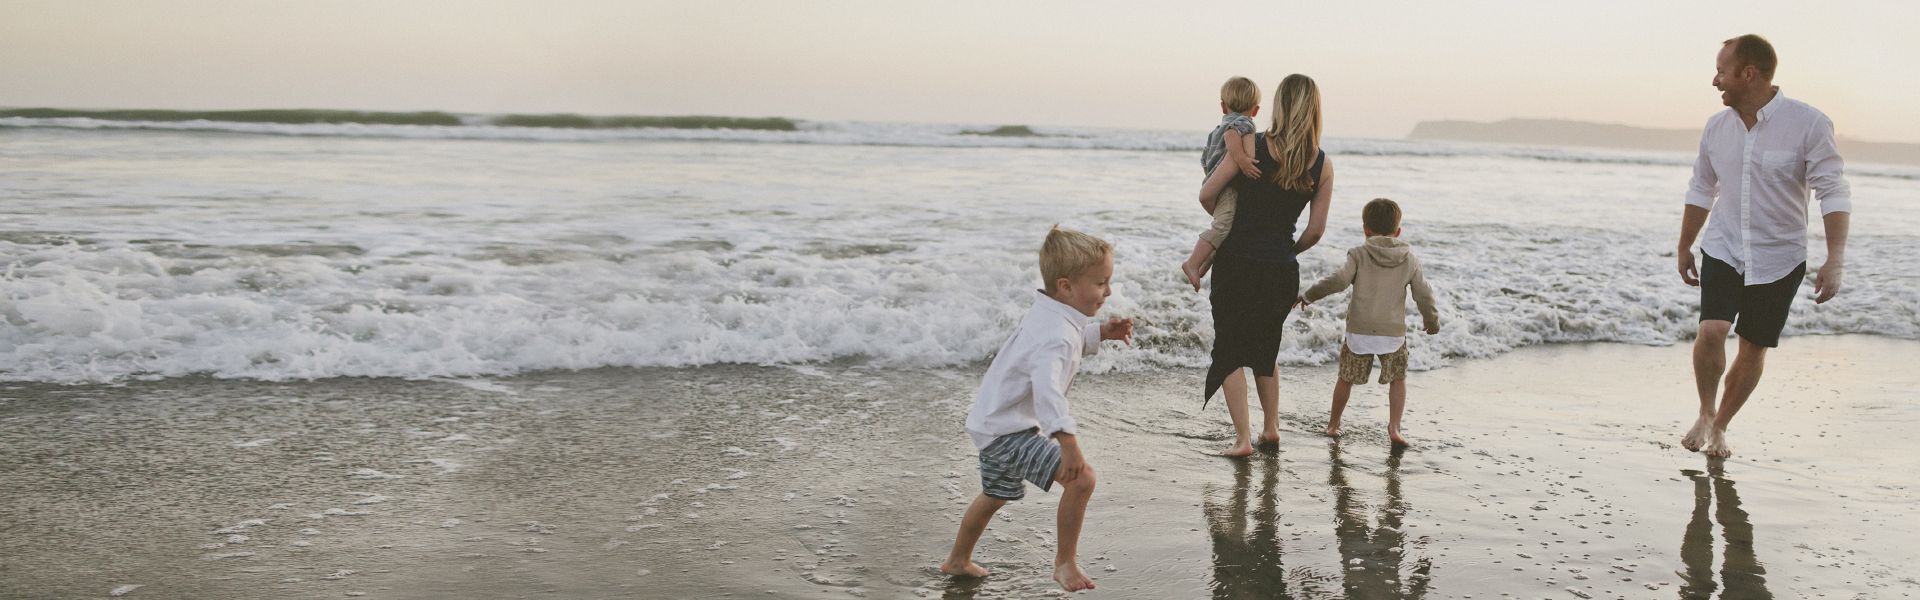 Teaser Atopie, glückliche Familie am Strand bei Sonnenuntergang